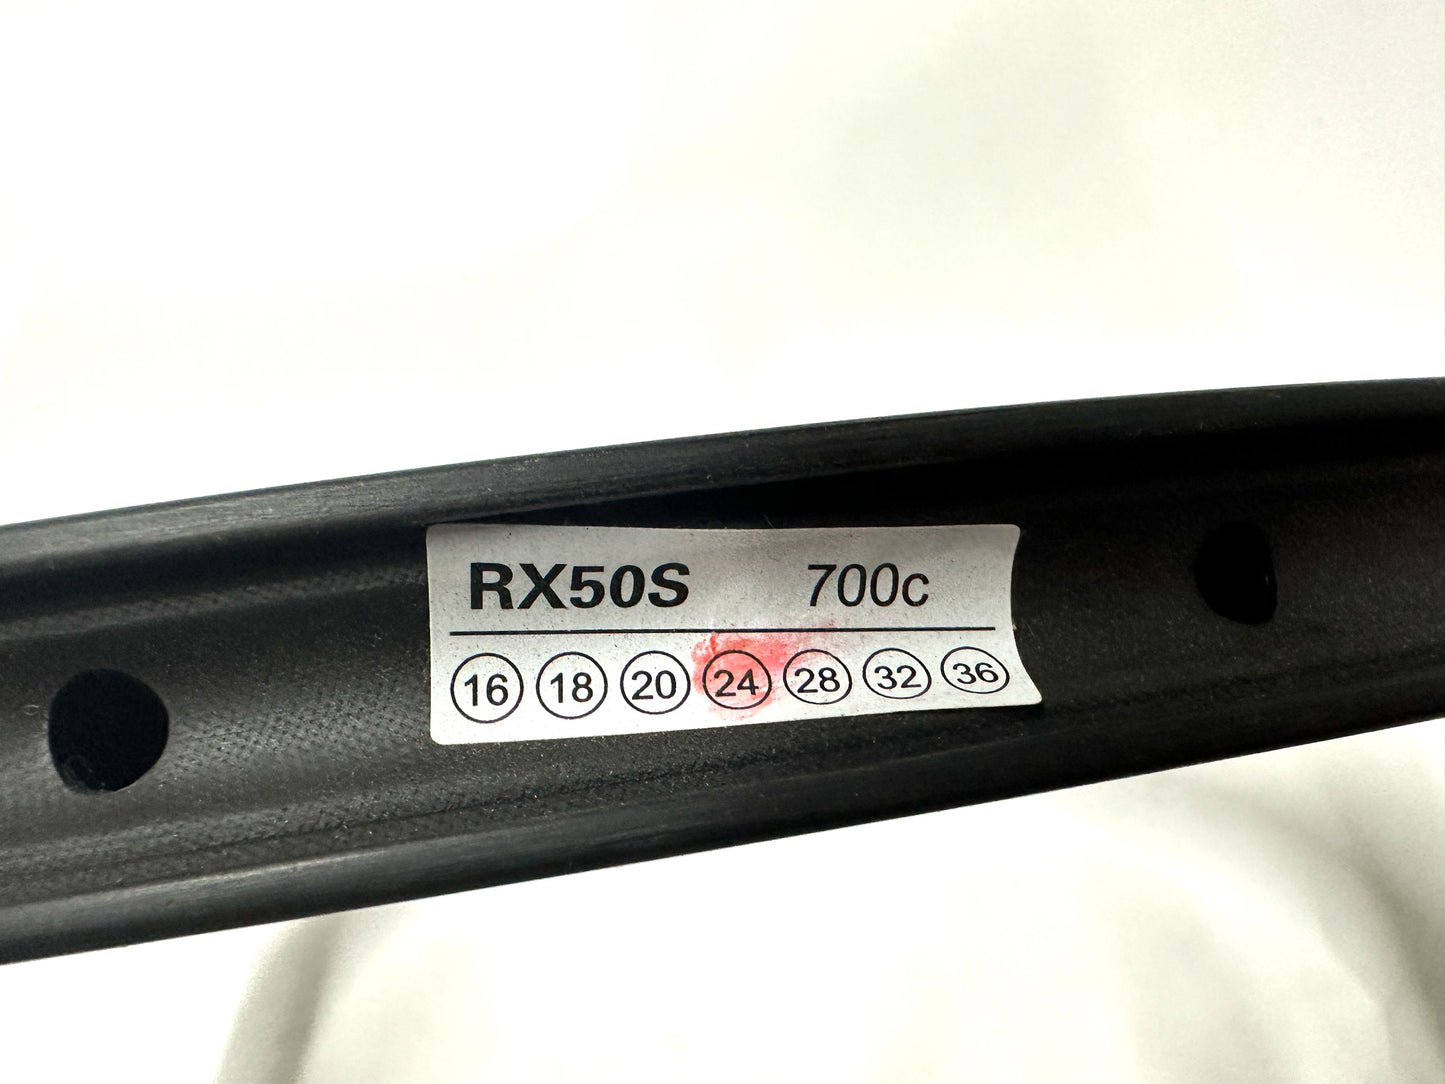 Sample 700c RX50S Carbon Clincher Bike Rim Brakes 24 Spoke NEW